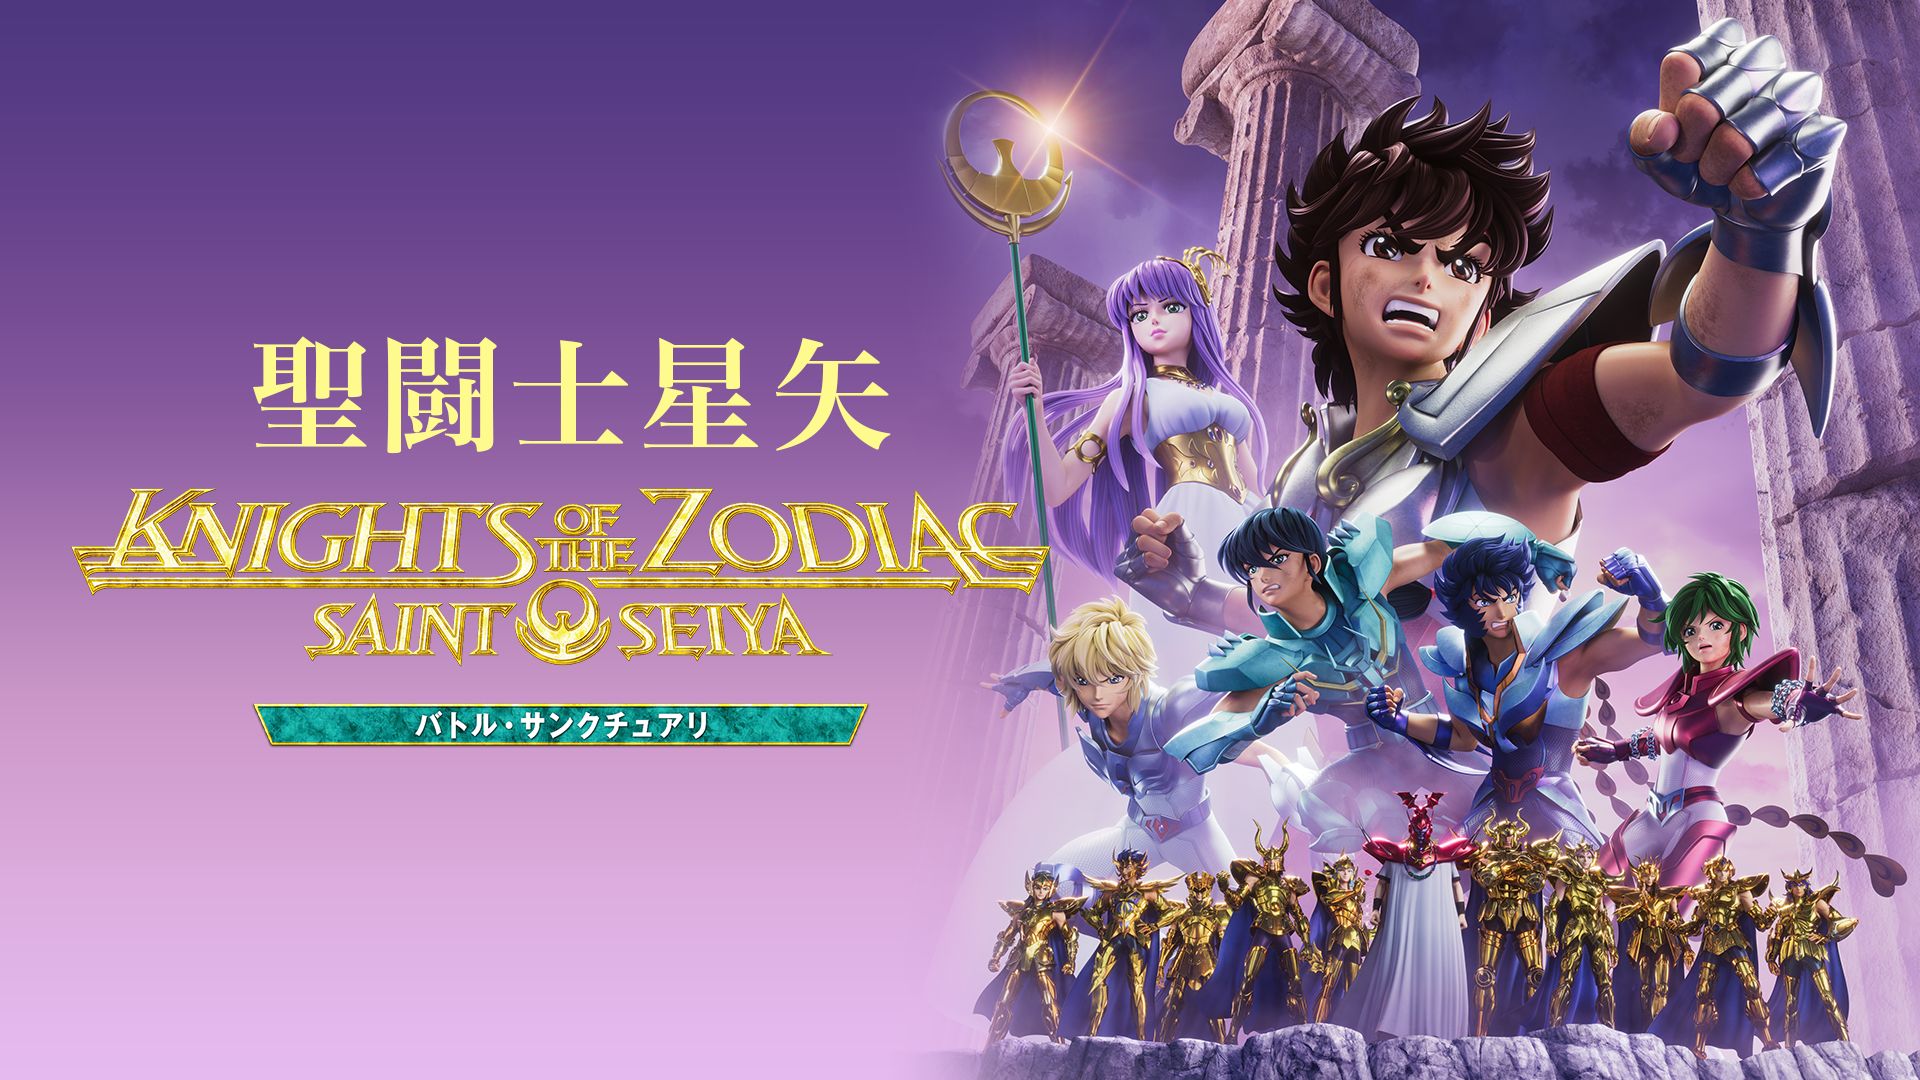 聖闘士星矢: Knights of the Zodiac シーズン2